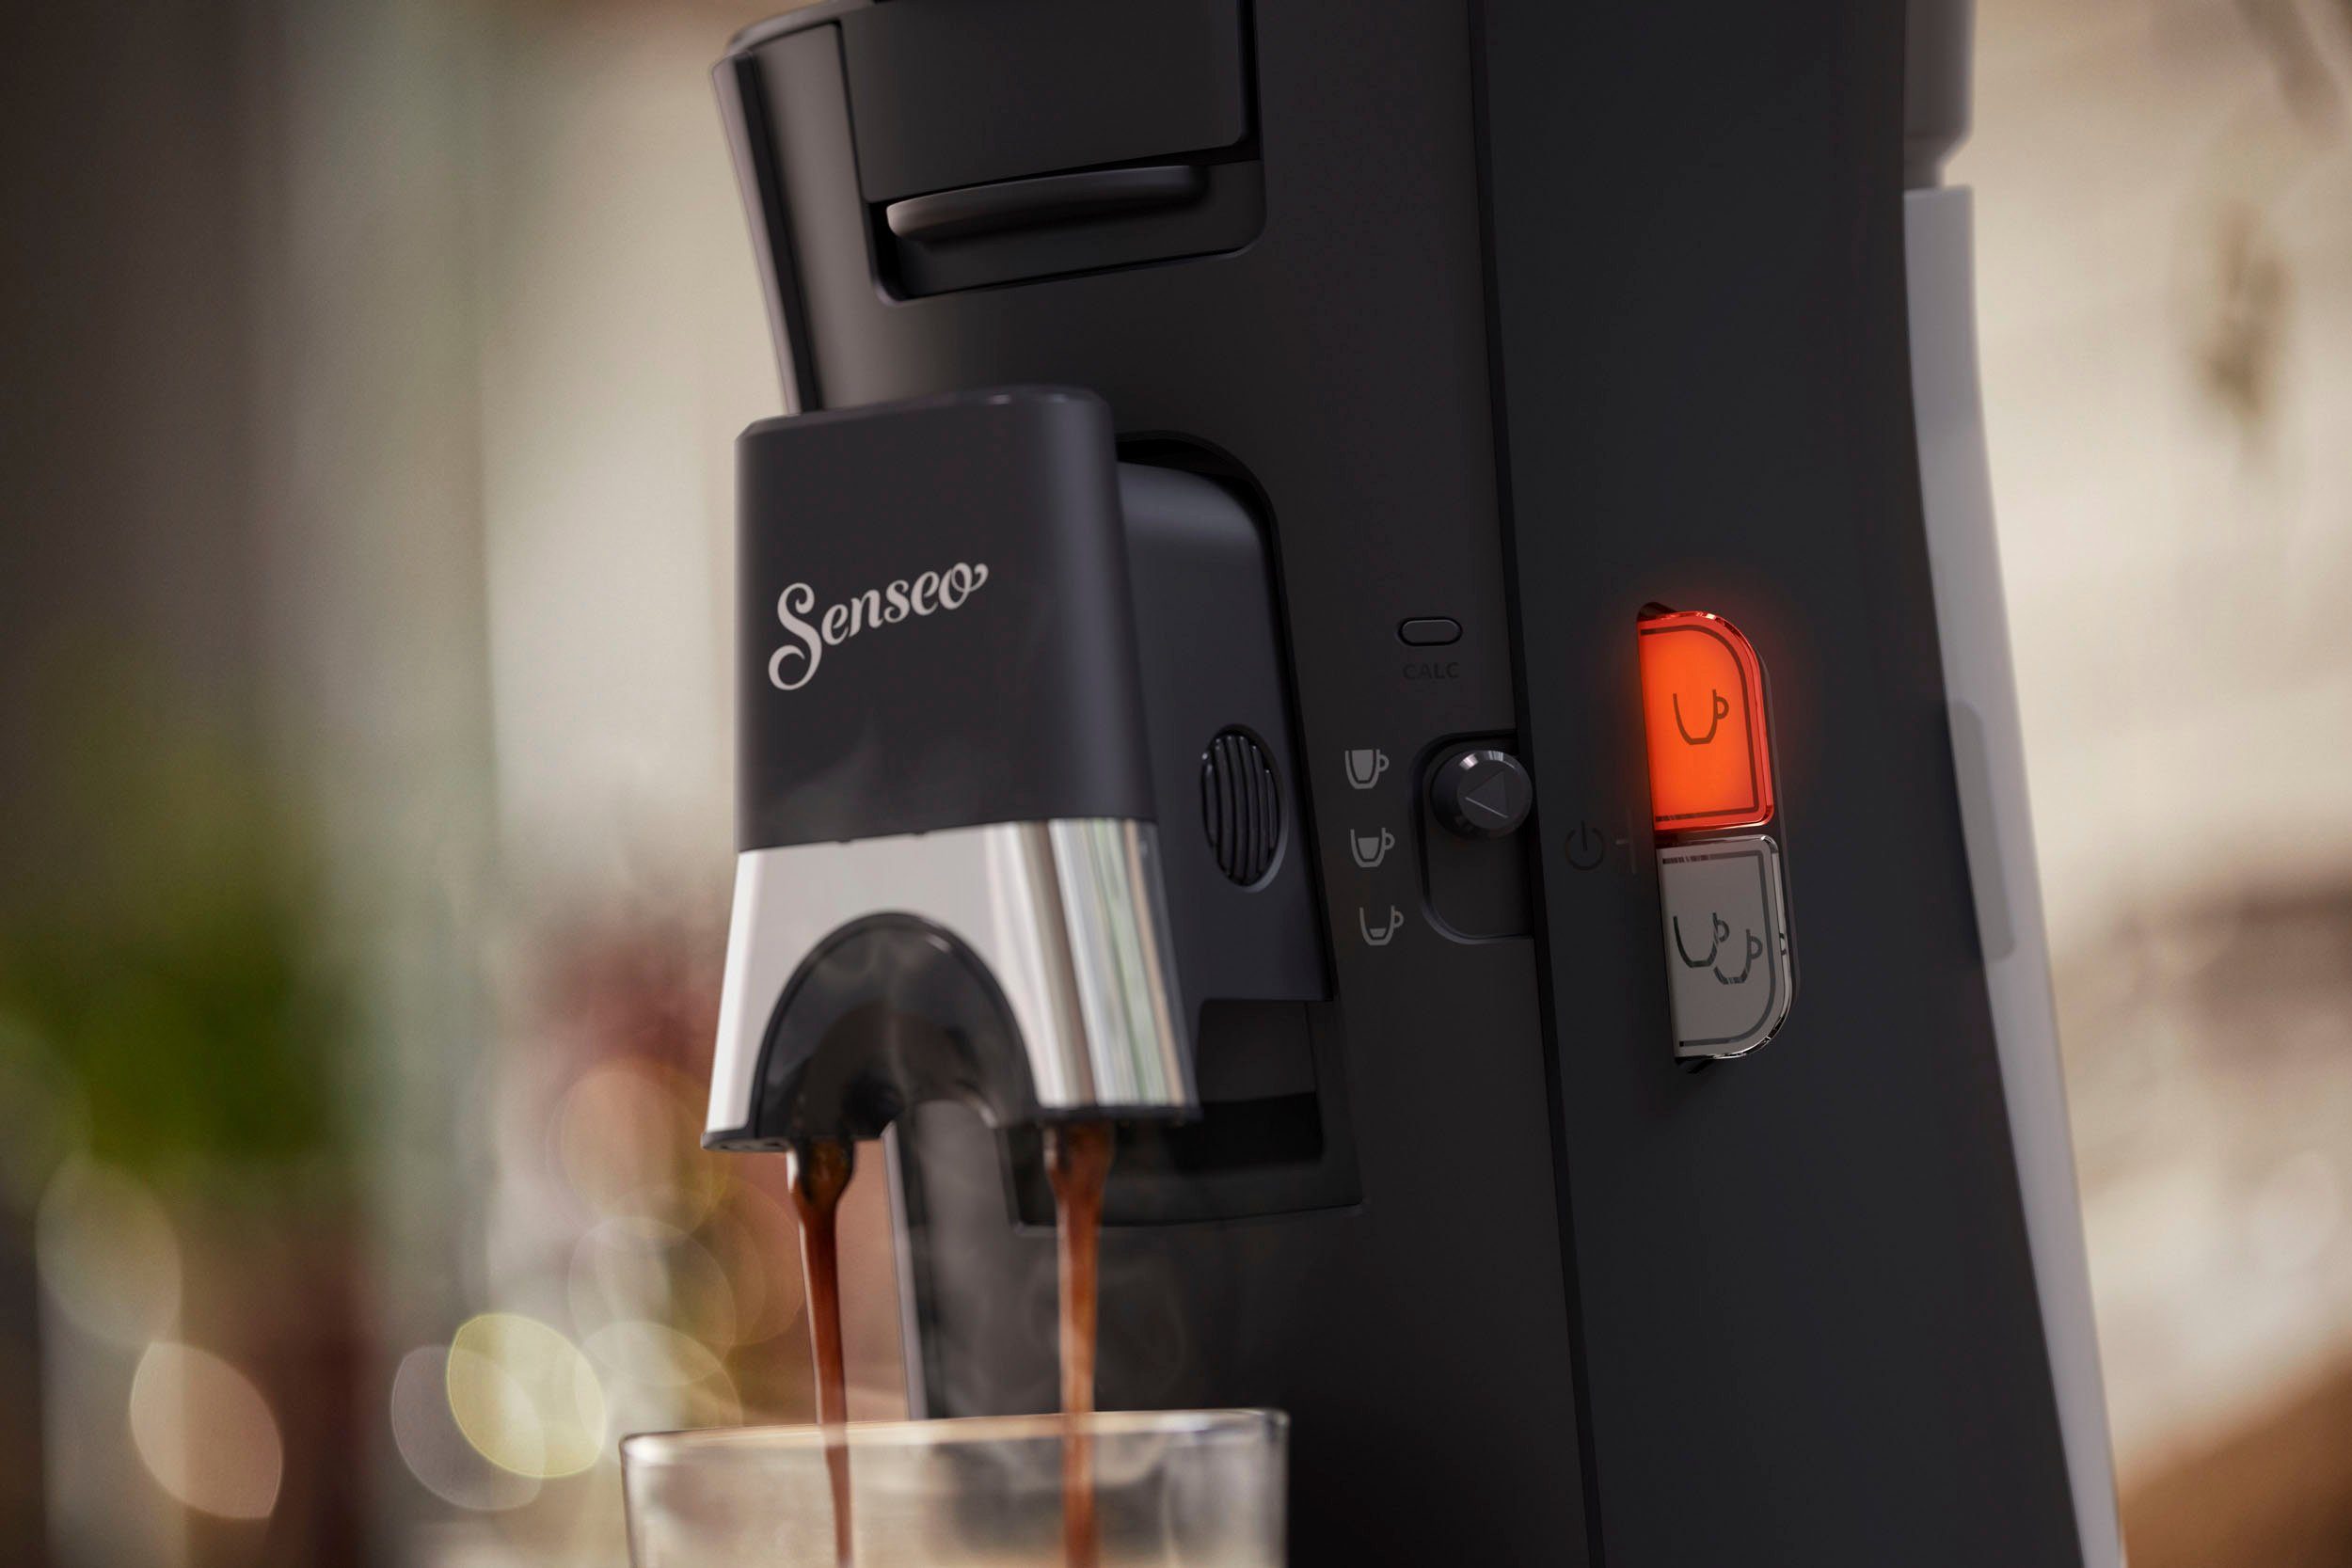 Philips Senseo Kaffeepadmaschine Plus, Kaffeespezialitäten, und recyceltem 21% Plastik, und bis € kaufen Pads Select +3 max.33 zurückerhalten Senseo 100 CSA230/69, aus Crema